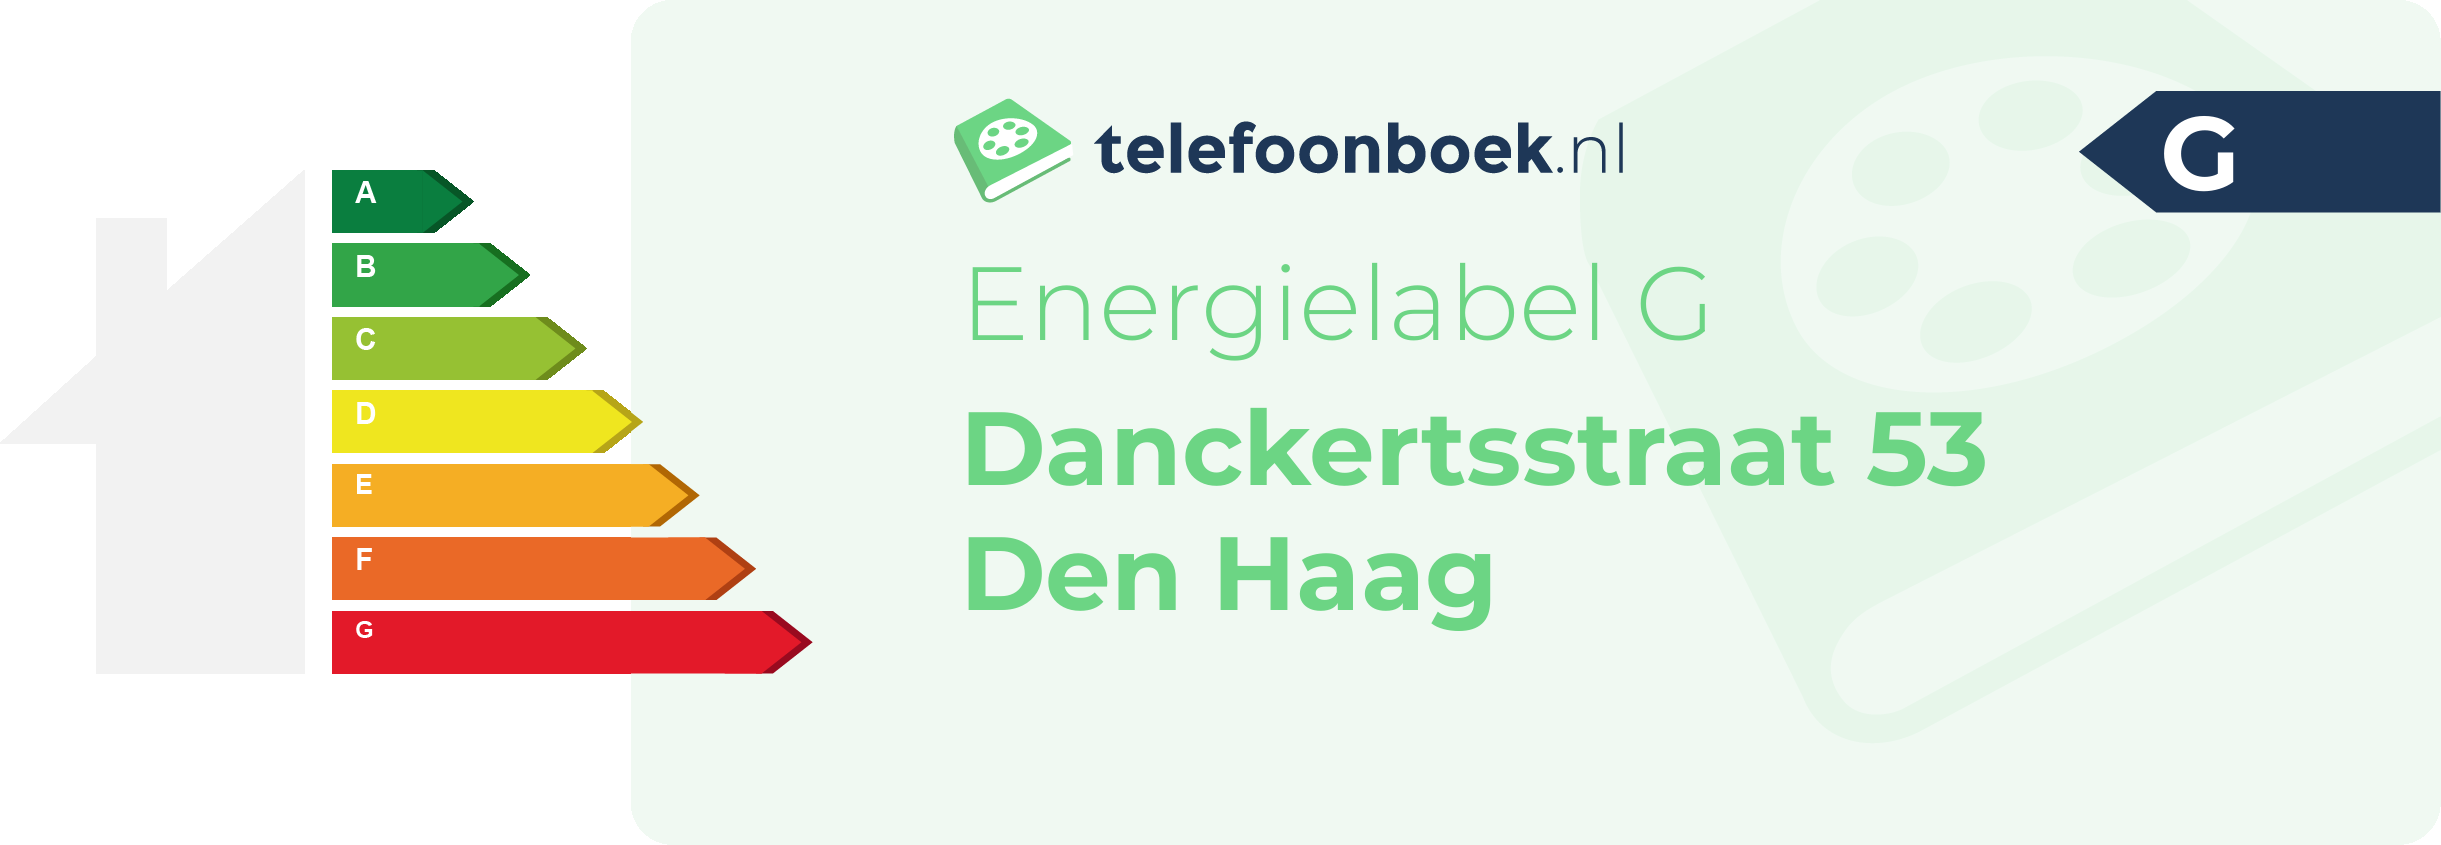 Energielabel Danckertsstraat 53 Den Haag